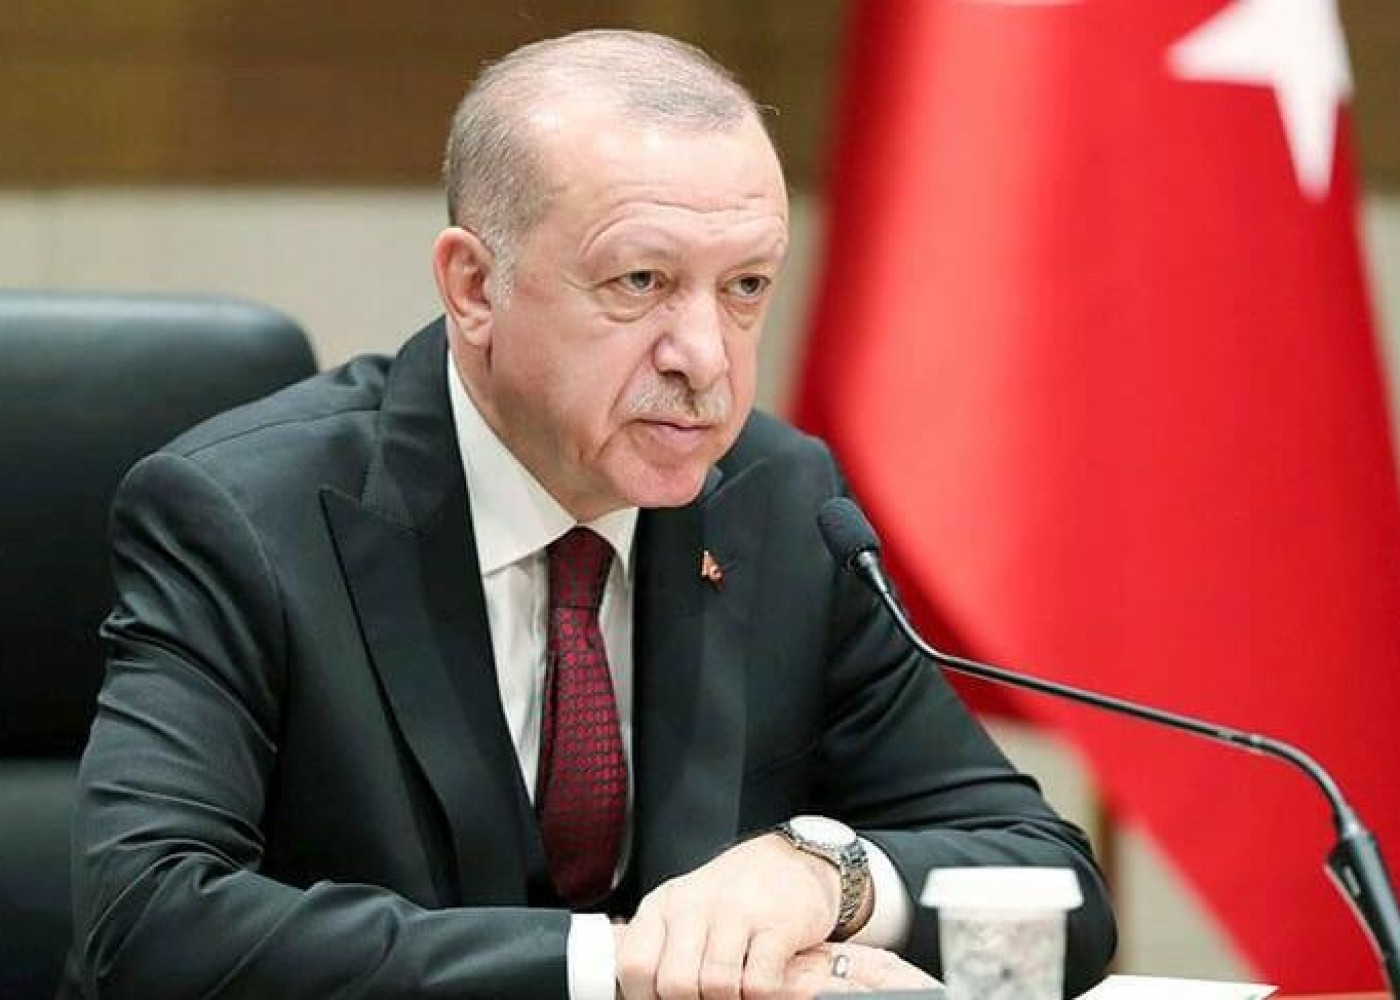 "ABŞ Türkiyə ilə Yunanıstan arasında gərginliyin artmasına çalışır"- Ərdoğan